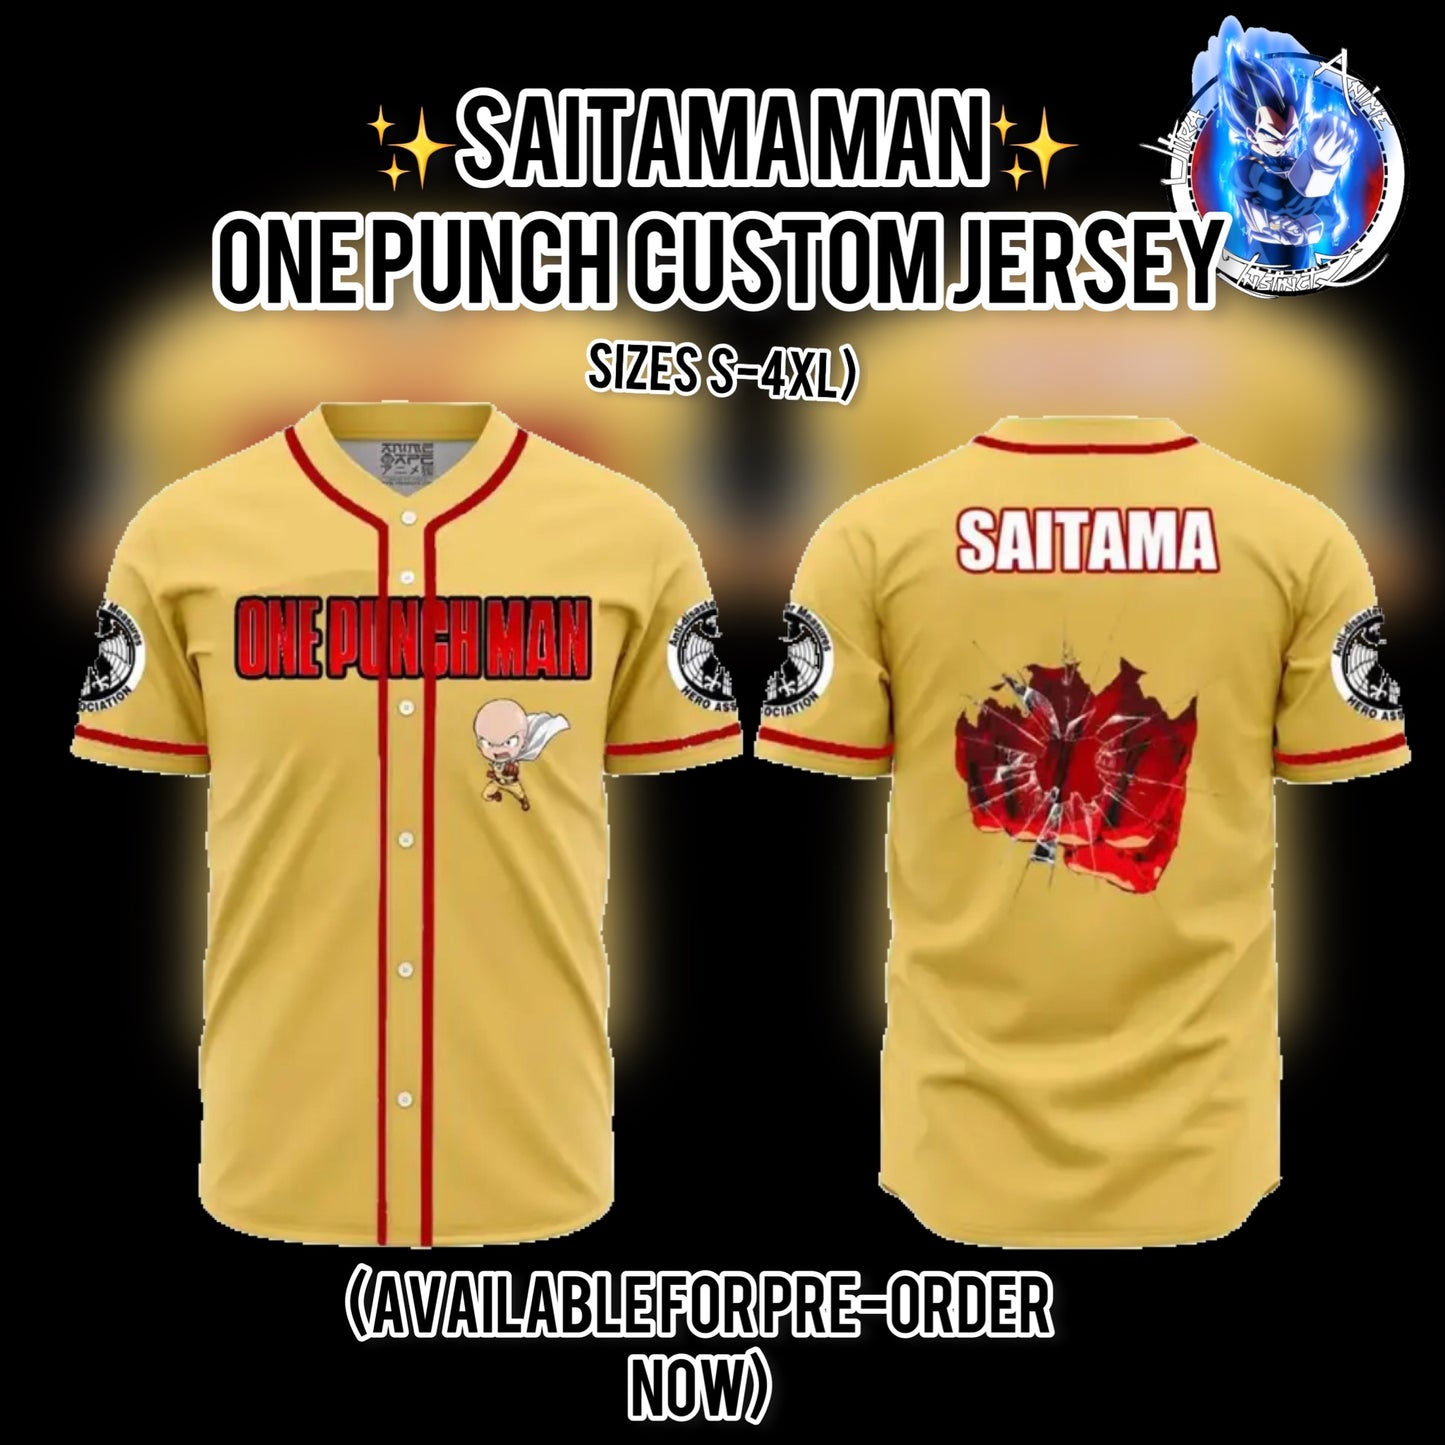 “SAITAMA MAN” - One Punch Man Jersey